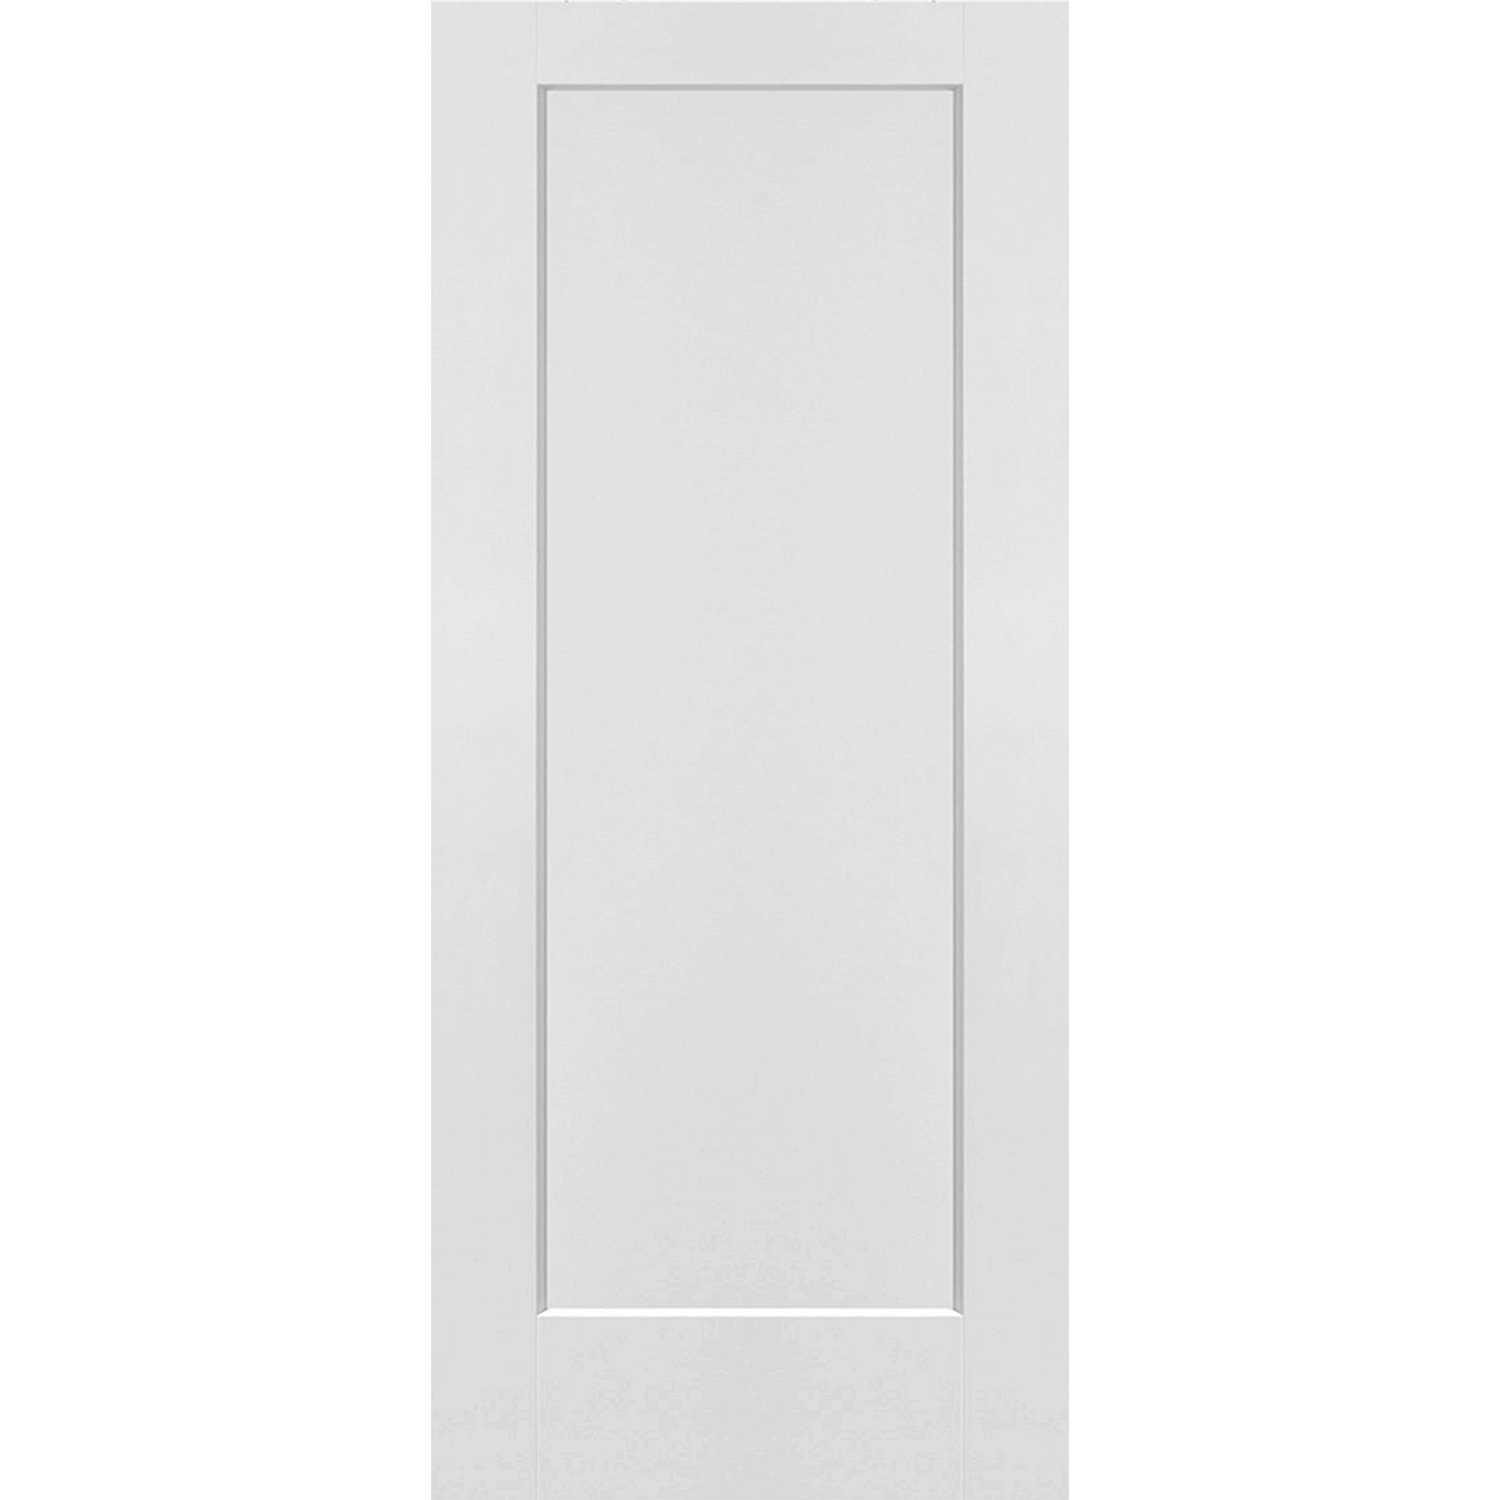 1 Panel Interior Door Shaker Style (Hollow Core) - 34 x 80 - D1HS34